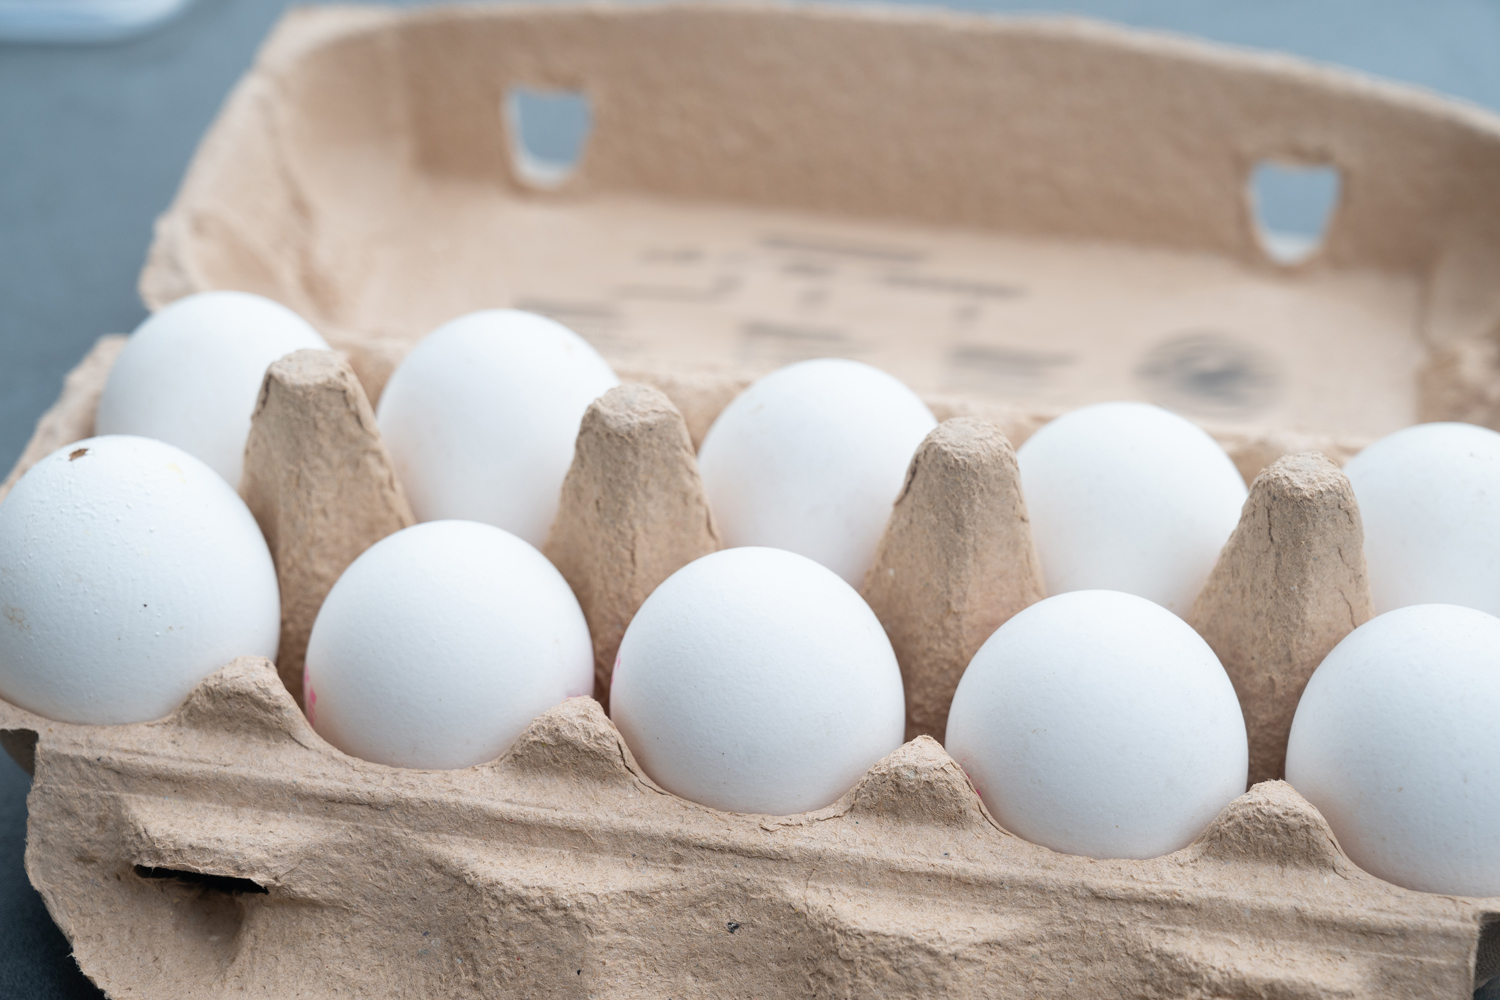 White eggs in an egg carton